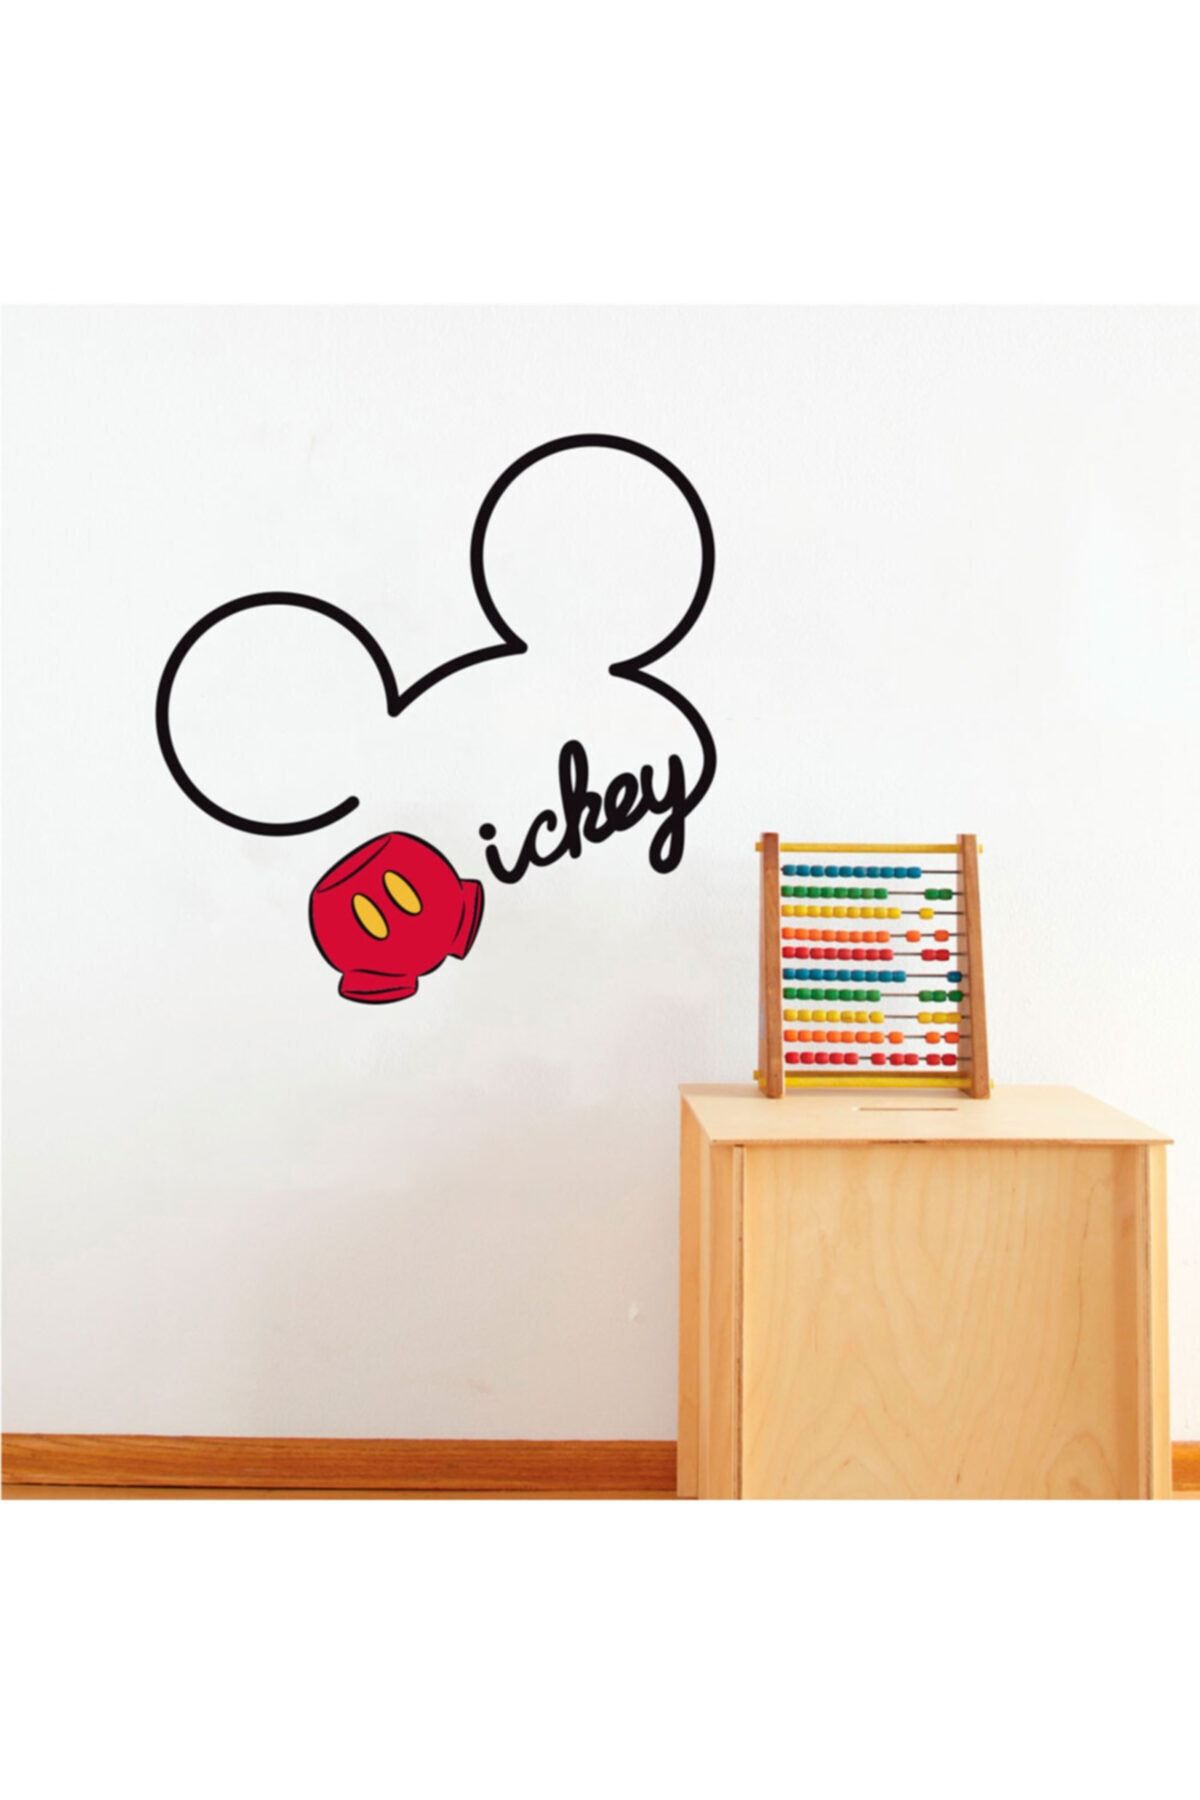 DEZ Mıckey Mouse Çocuk Odası Duvar Sticker